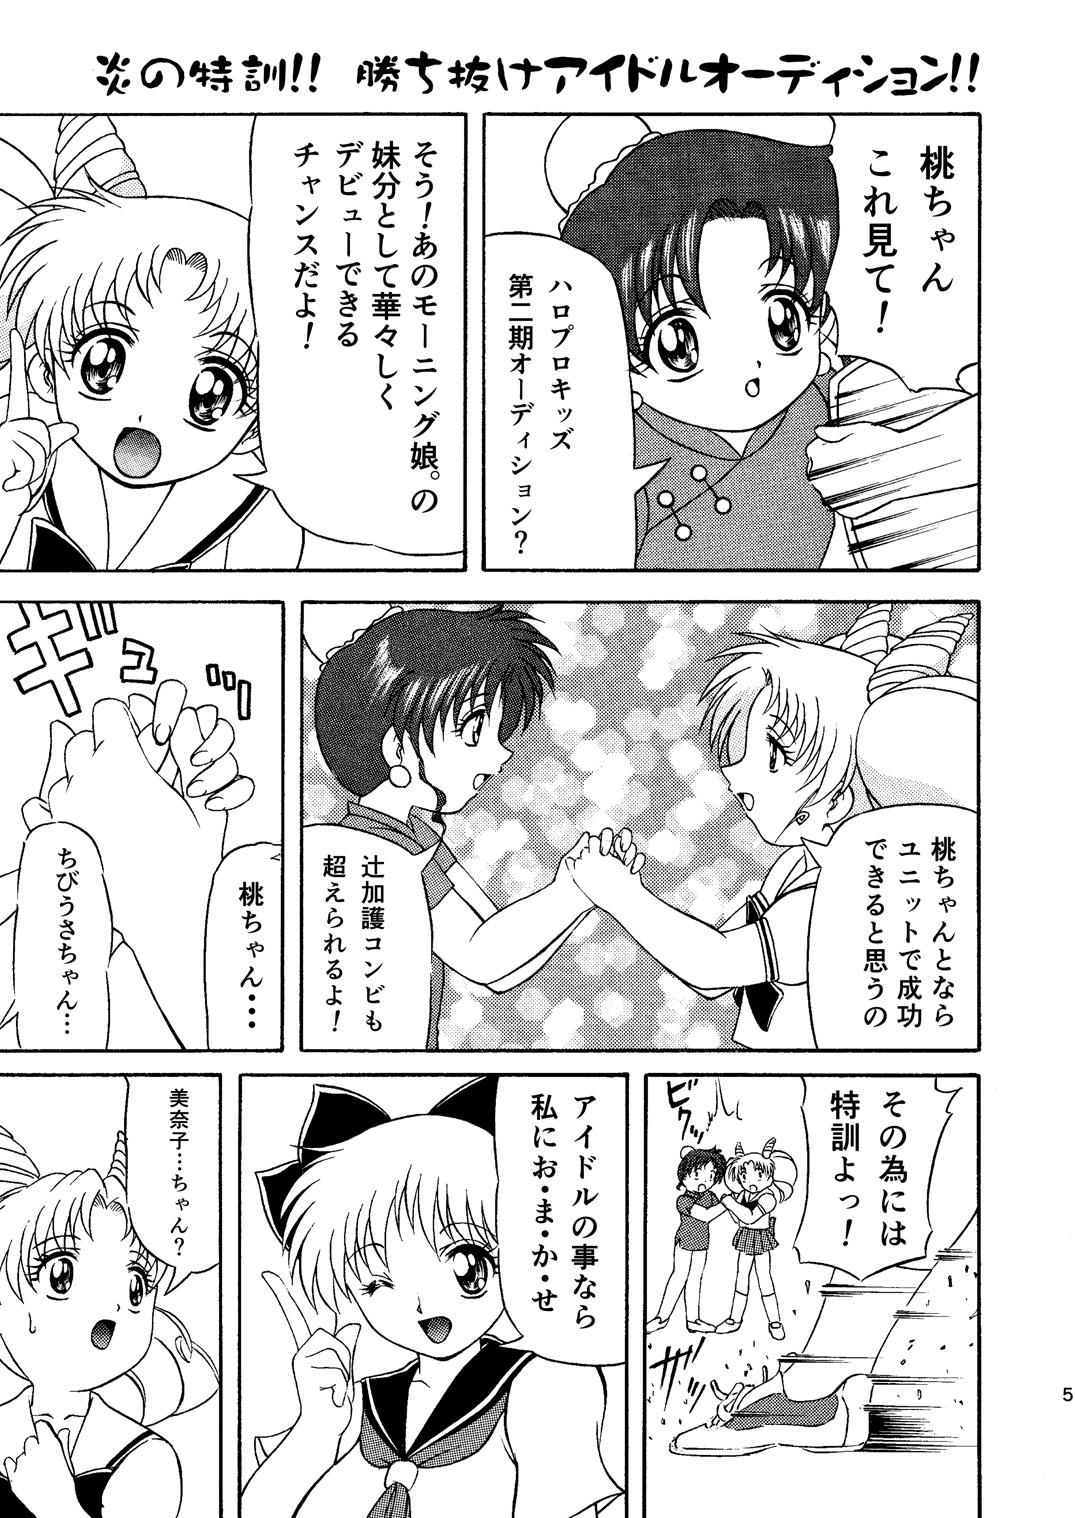 Foot Worship PINK SUGAR 20th Anniversary Special - Sailor moon | bishoujo senshi sailor moon Gay Military - Page 5